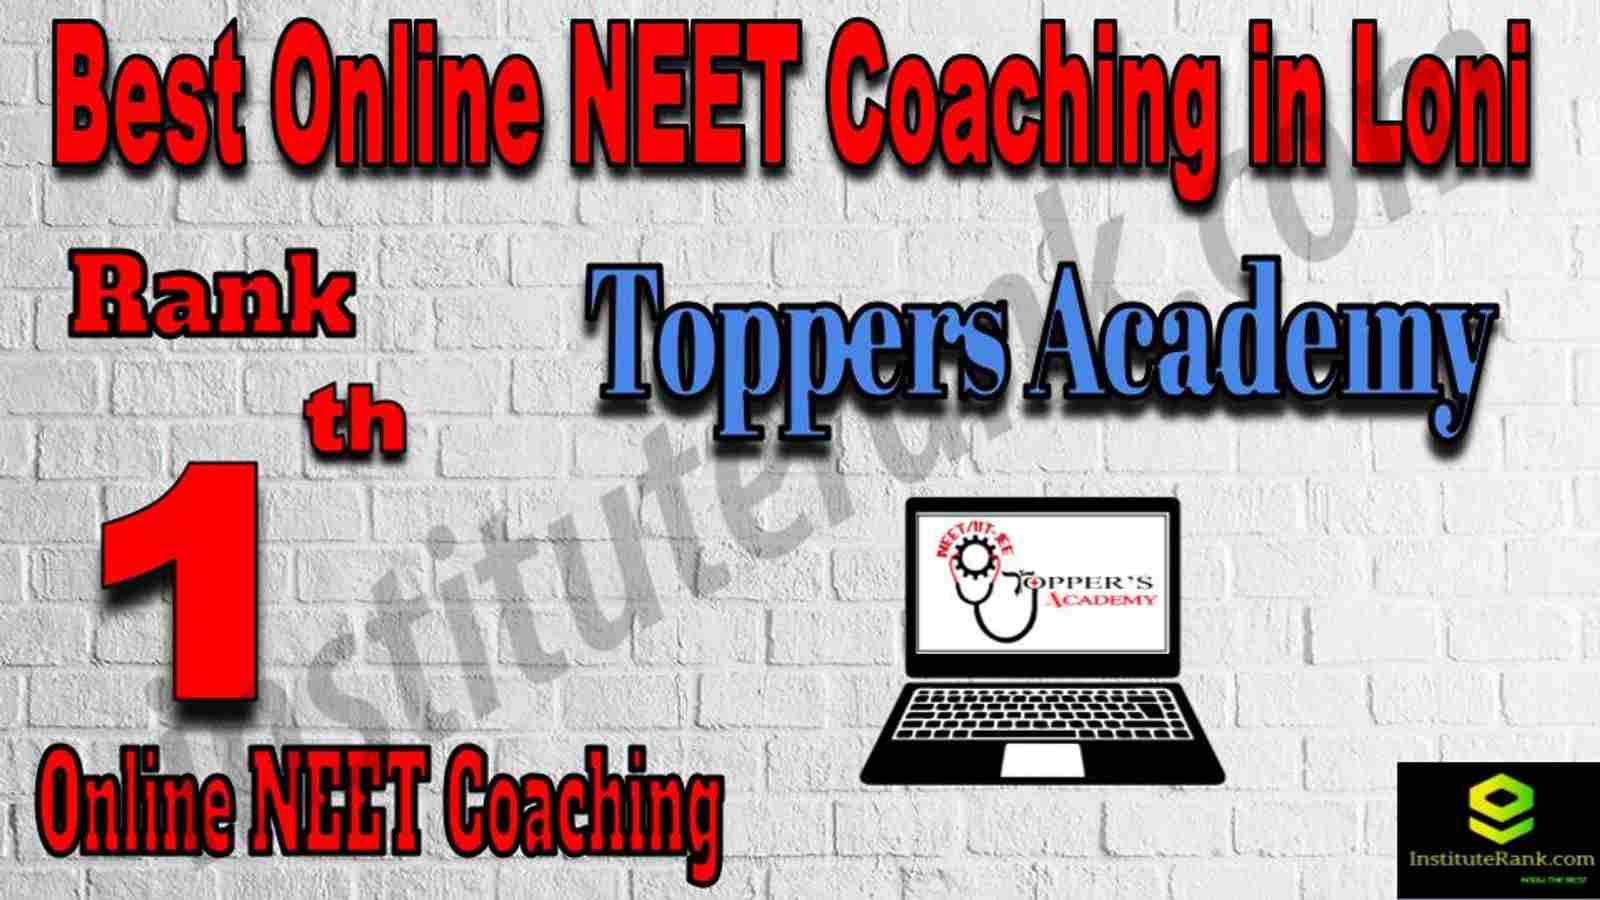 Rank 1 Best Online NEET Coaching in Loni